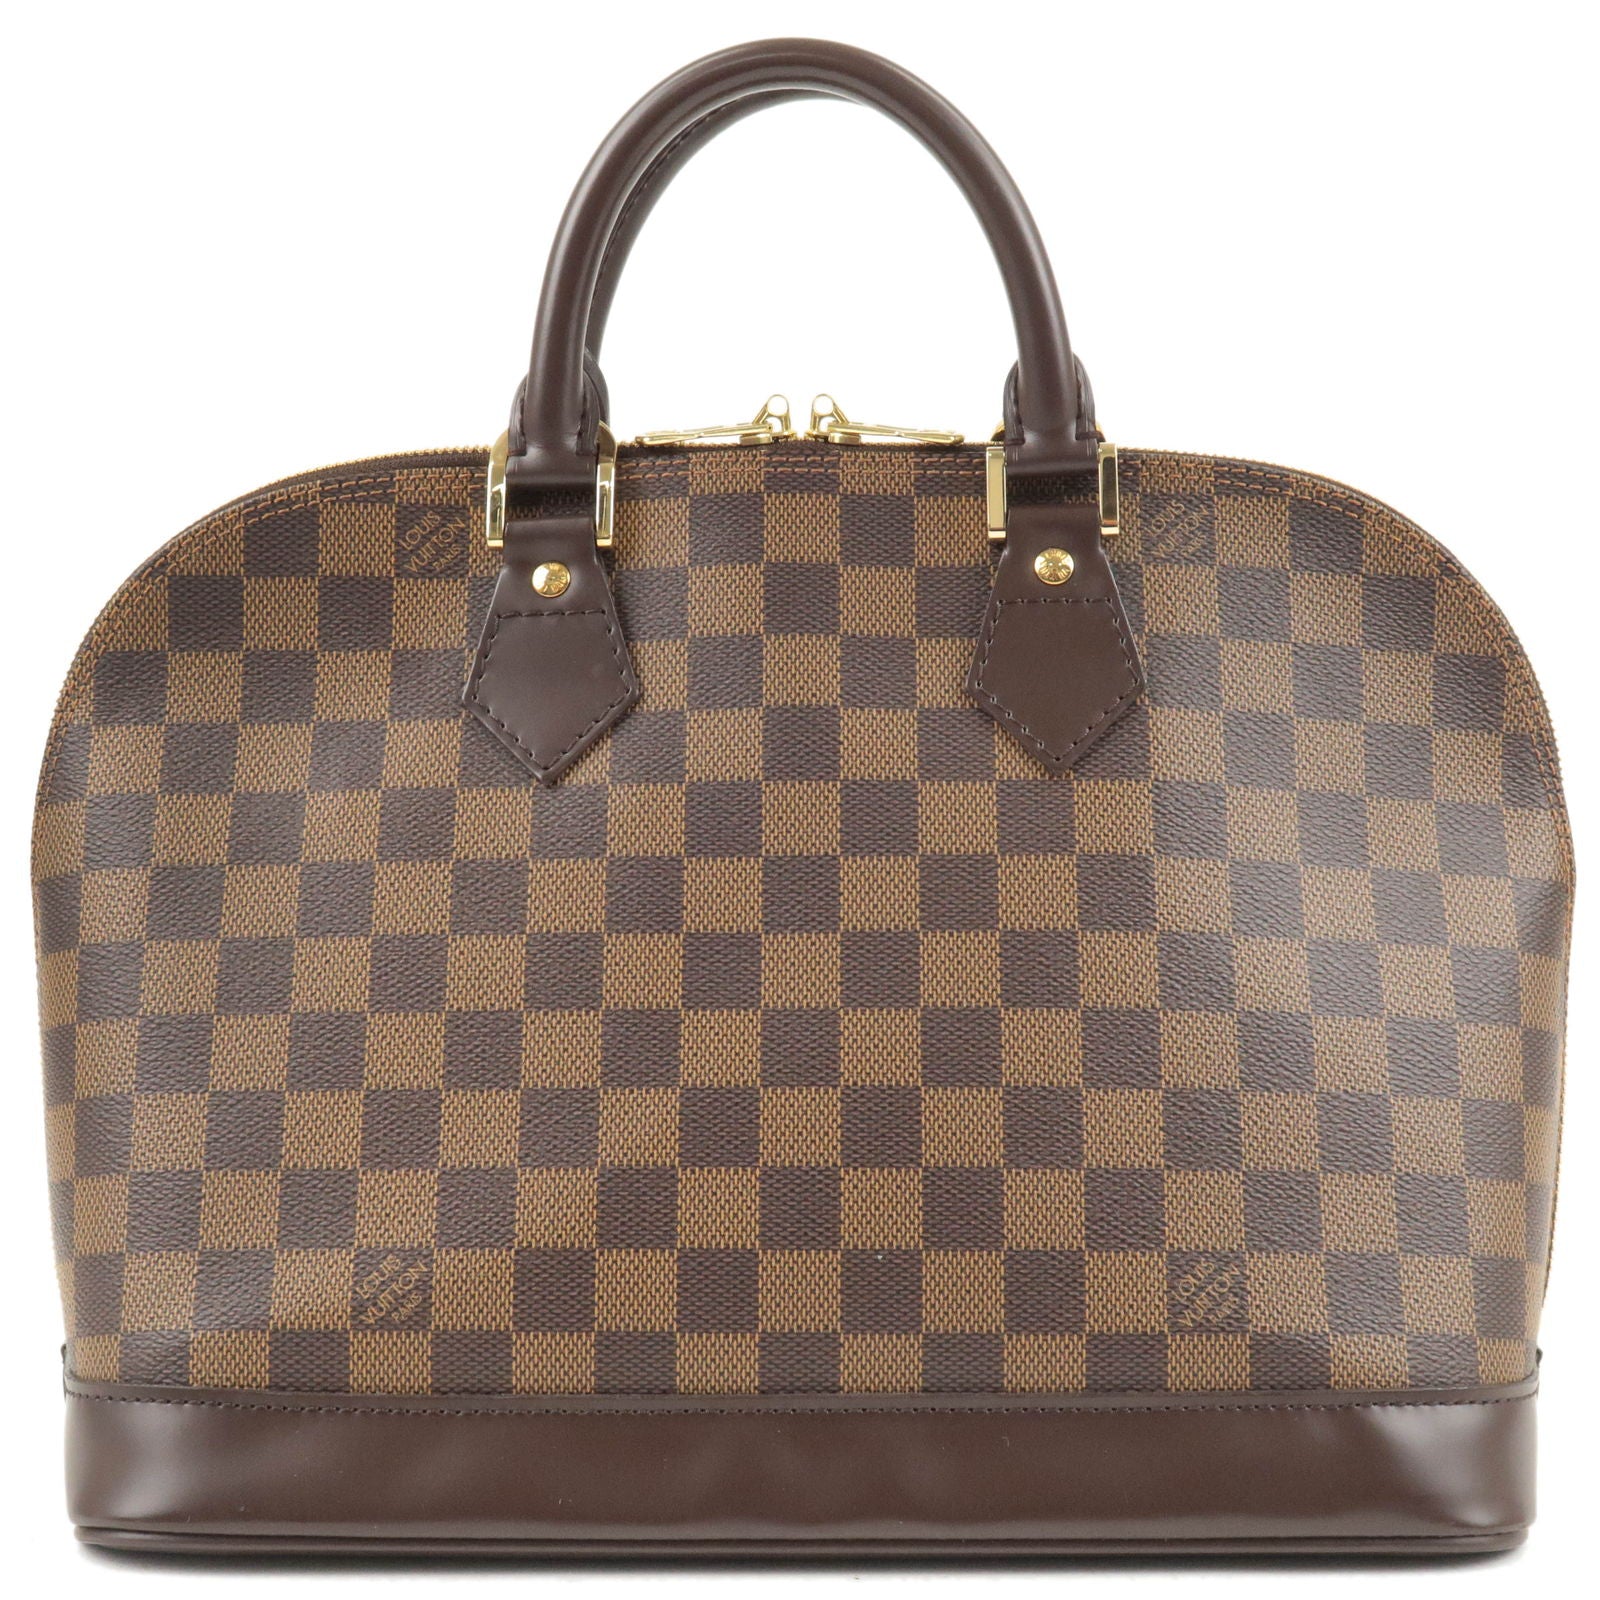 Damier - Louis - N51131 – now it s Louis Vuitton - Vuitton - Bag